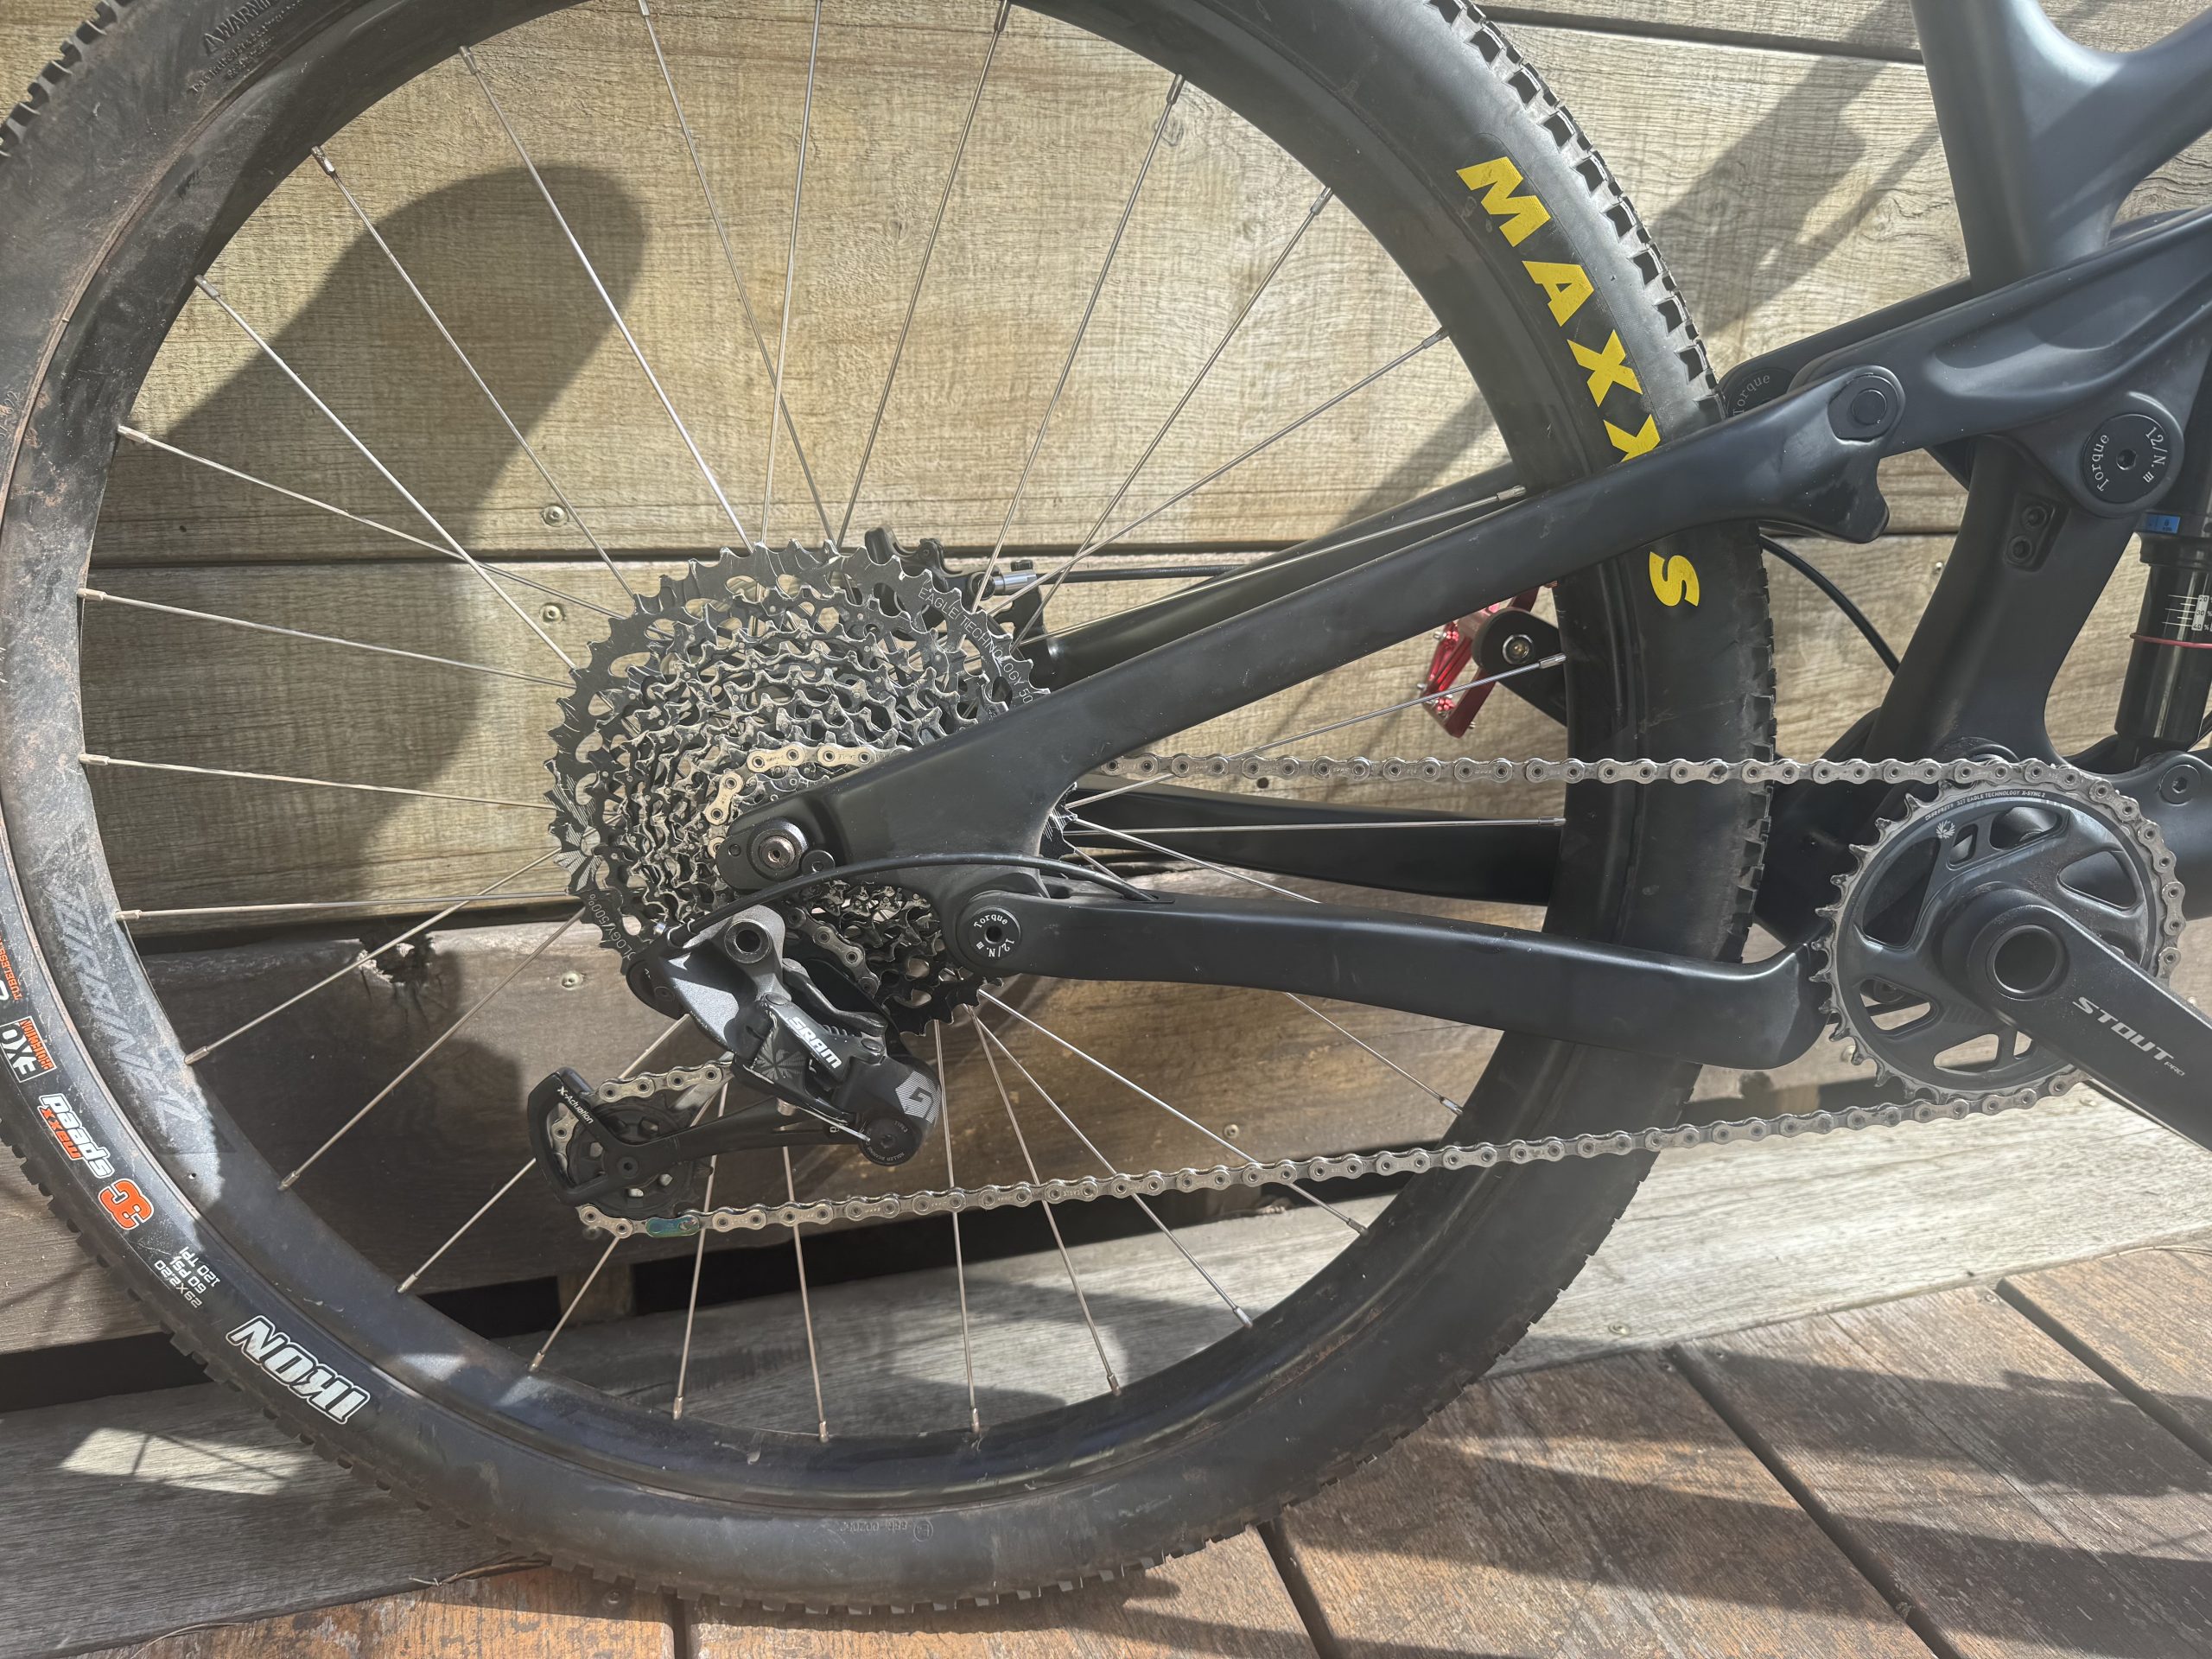 XS Trail Bike New Frame (Ican)